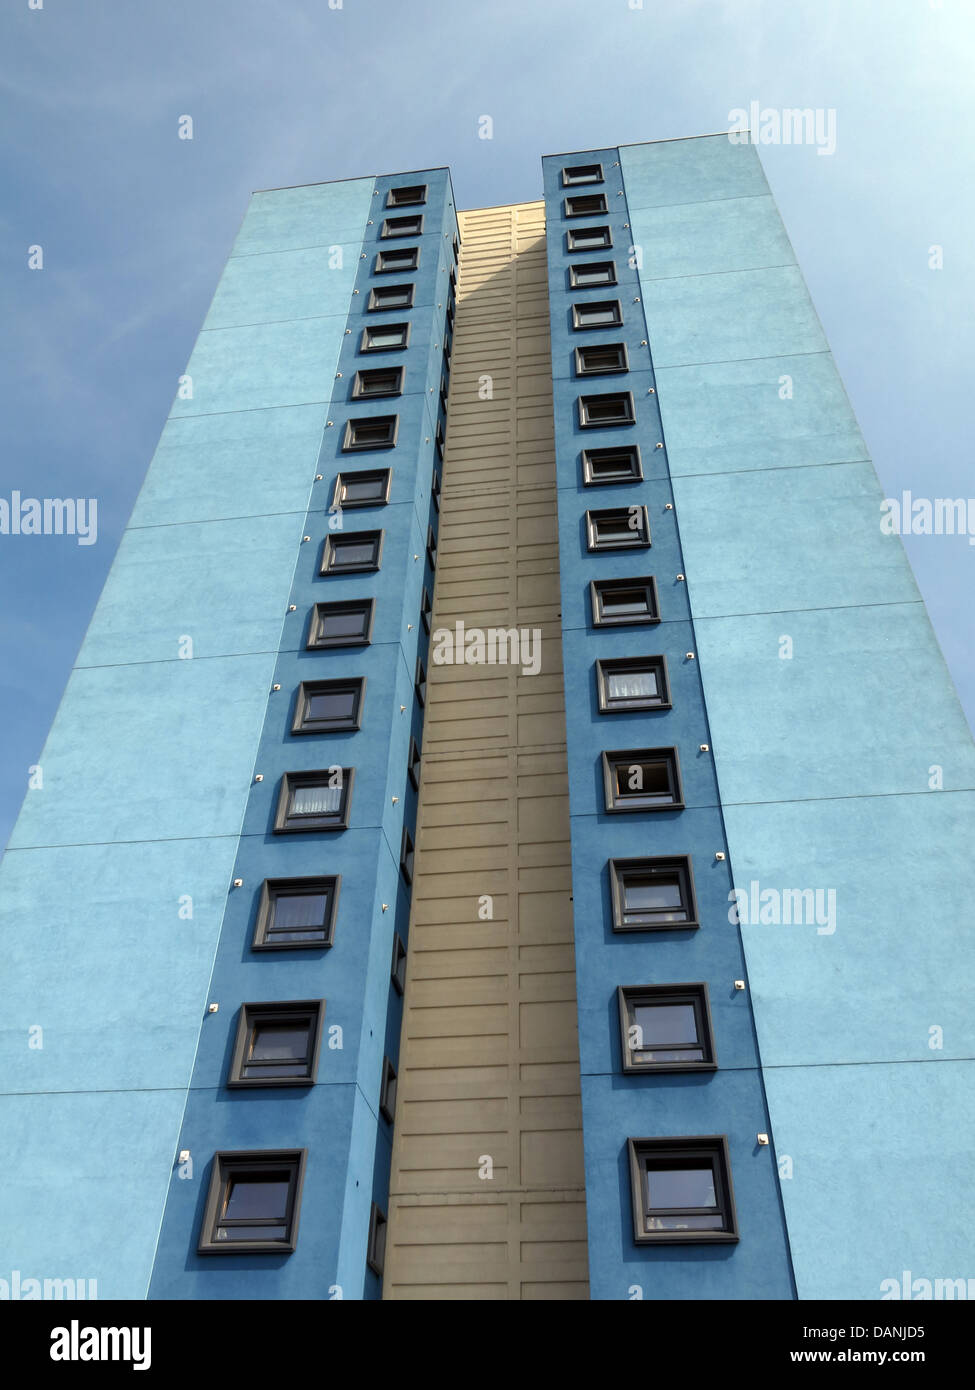 Grande ville résidentielle tower blocks West Midlands près de Wolverhampton England UK - peint en bleu et Teal Banque D'Images